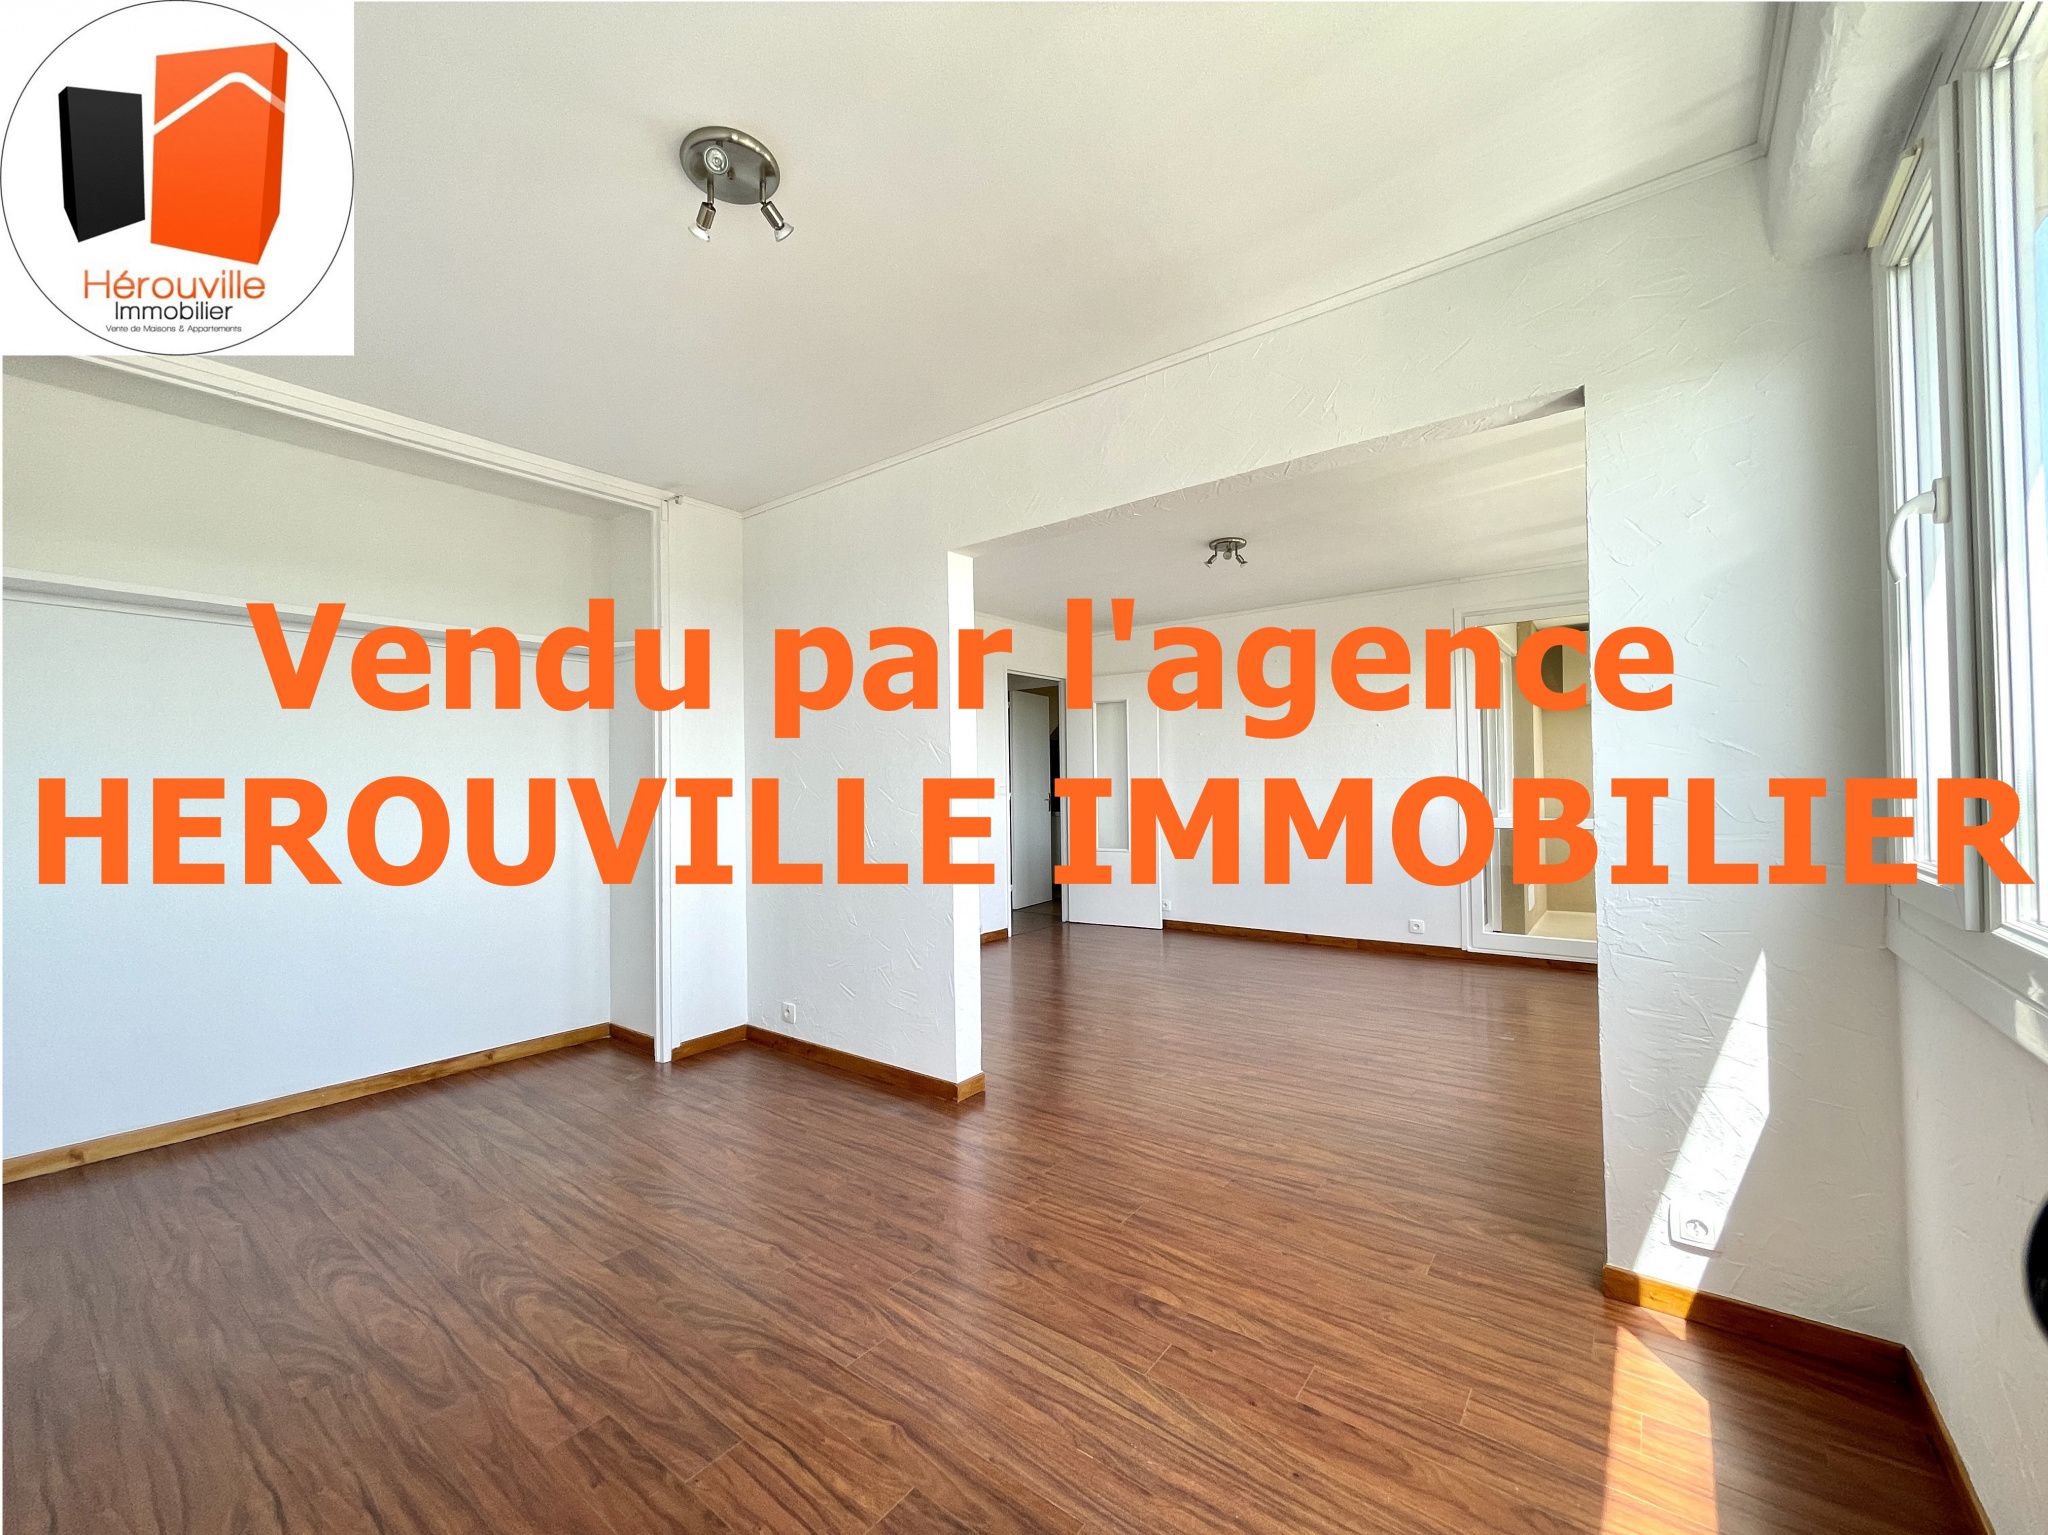 Vente Appartement 70m² 4 Pièces à Hérouville-Saint-Clair (14200) - Herouville Immobilier